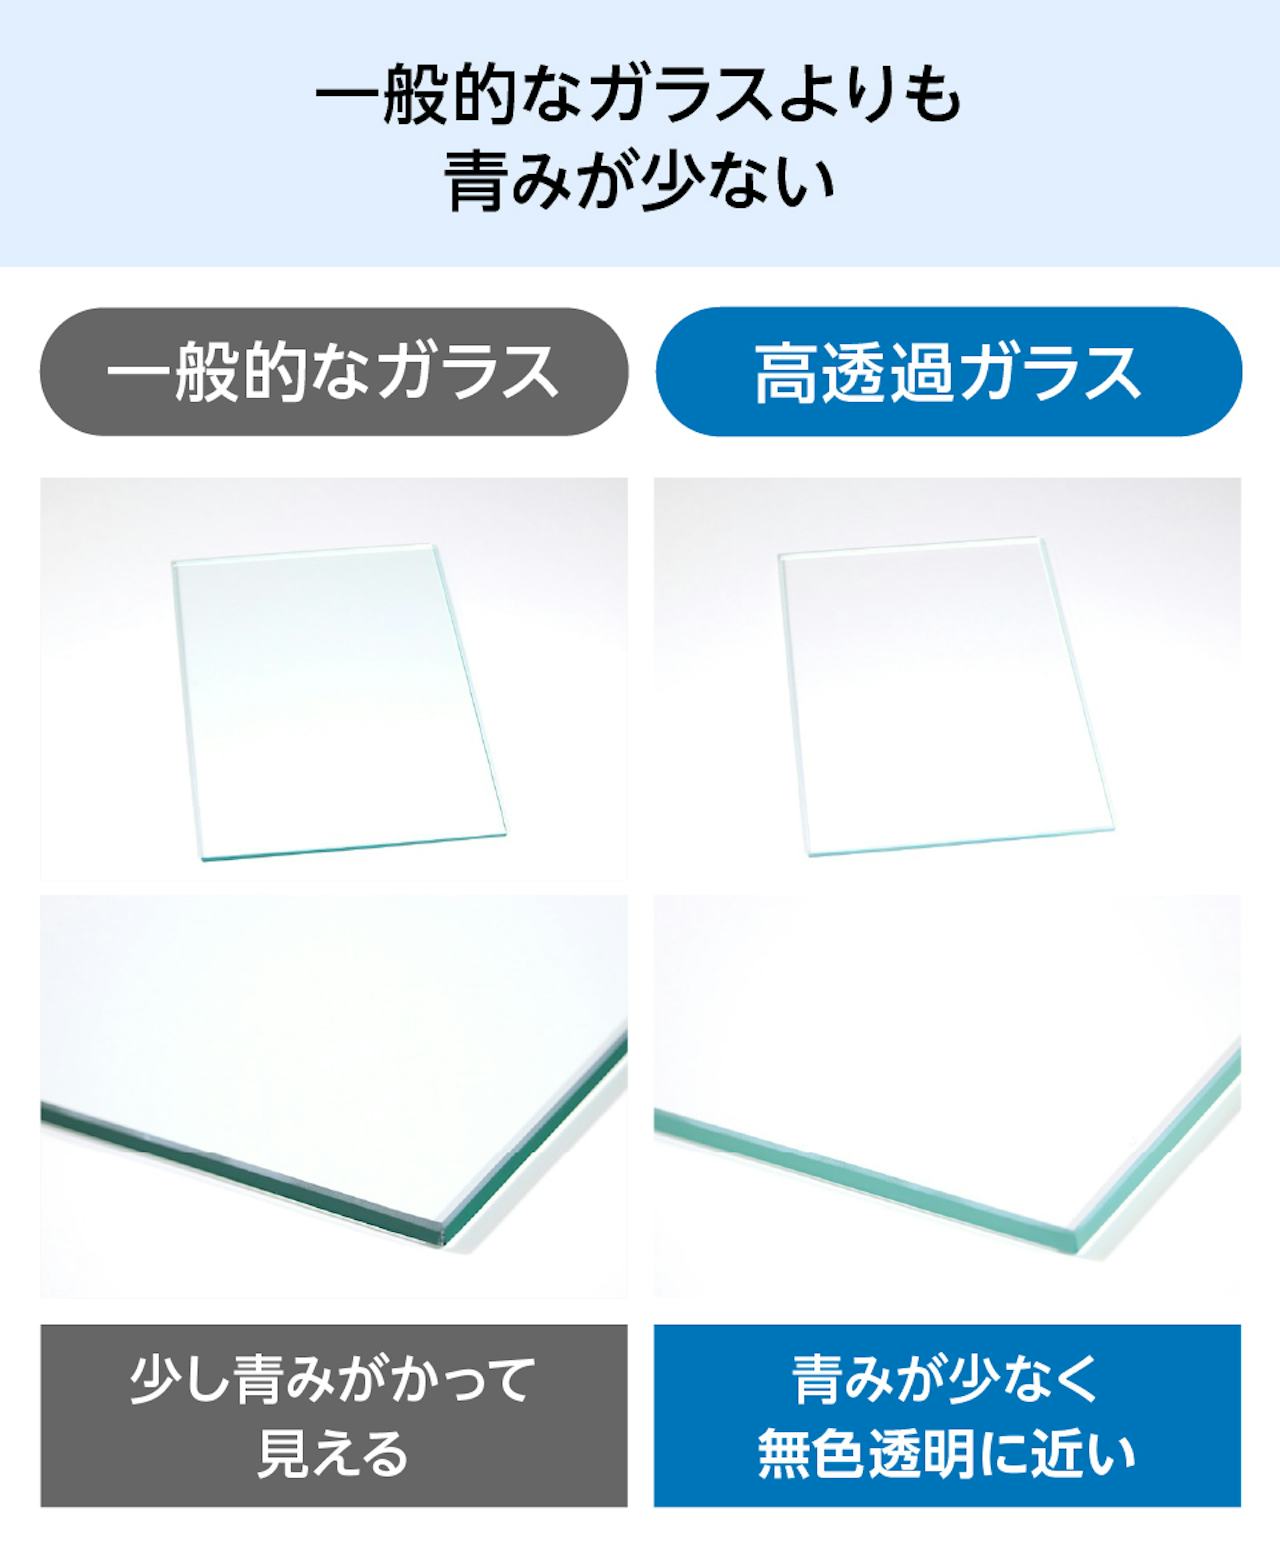 「高透過ガラス」のガラスケースは、一般的なガラスよりも青みが少ない